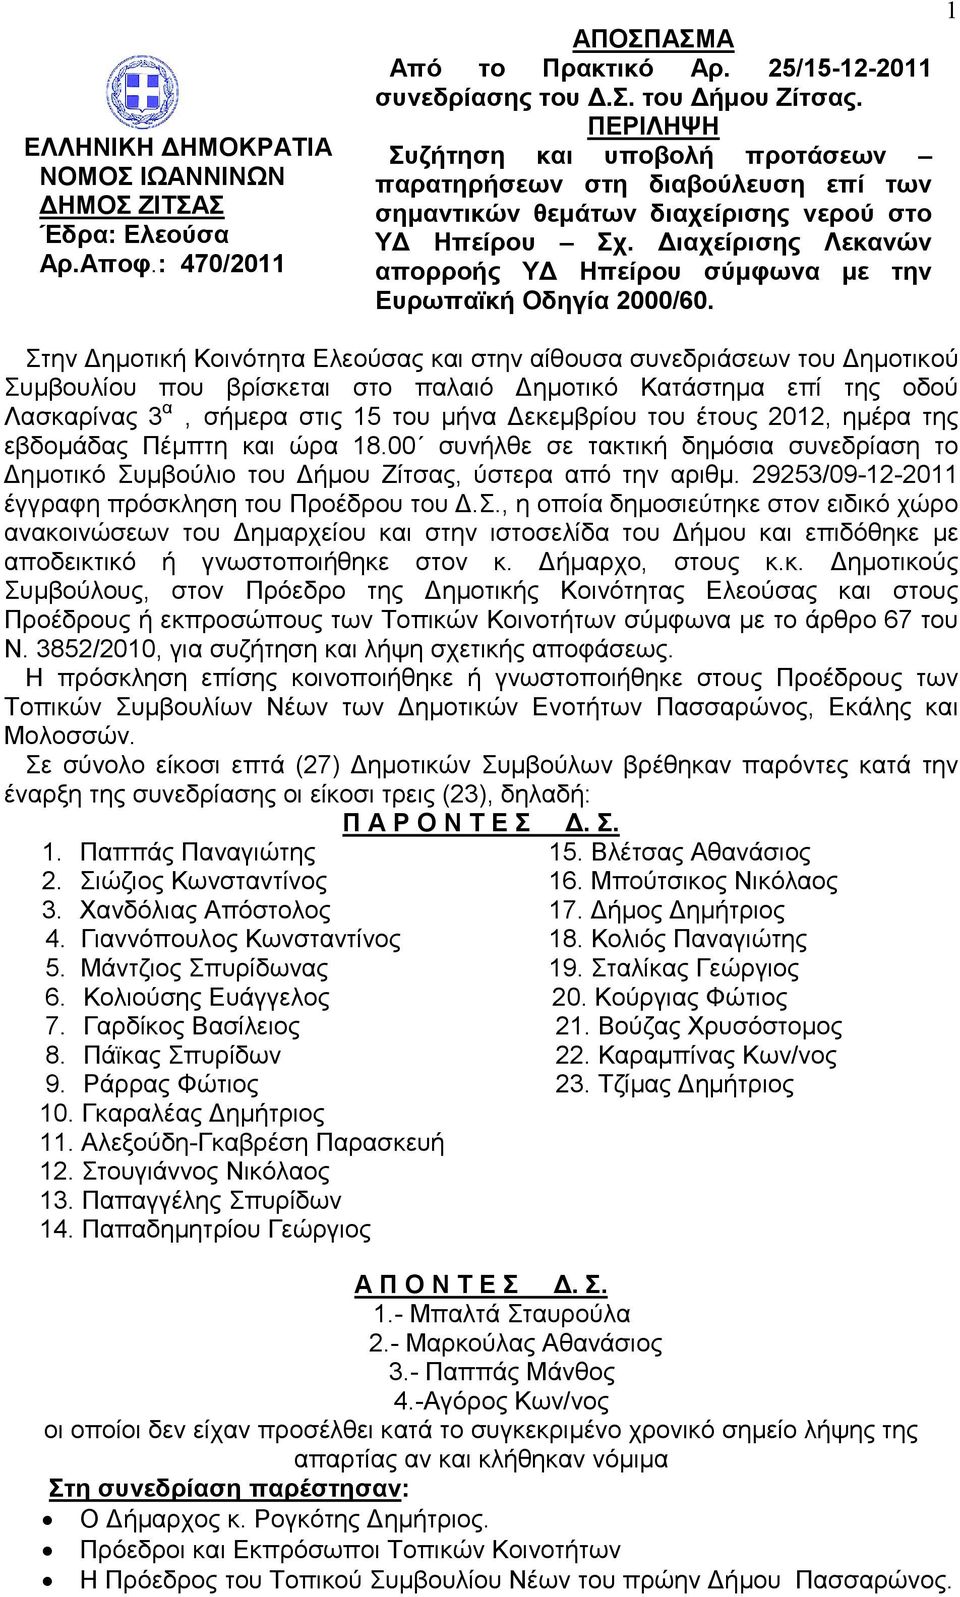 Διαχείρισης Λεκανών απορροής ΥΔ Ηπείρου σύμφωνα με την Ευρωπαϊκή Οδηγία 2000/60.